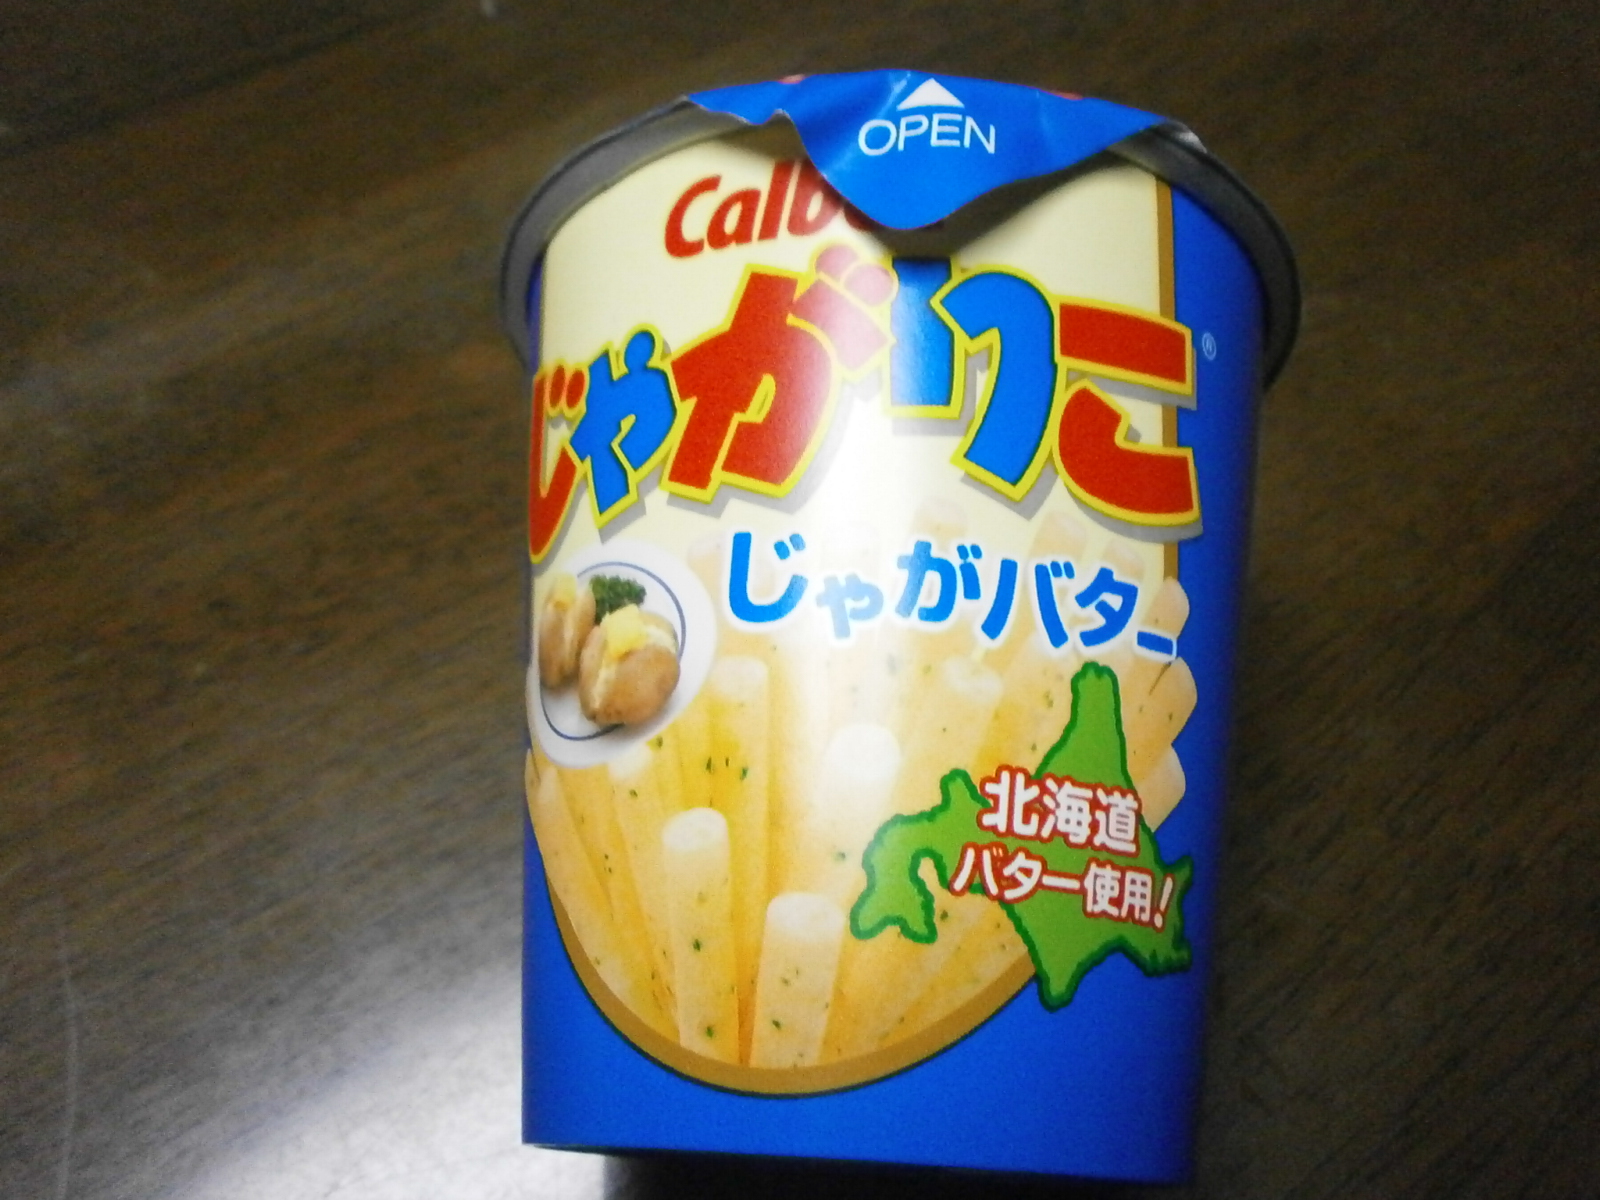 Les pommes de terre Riko (pommes de terre au beurre)